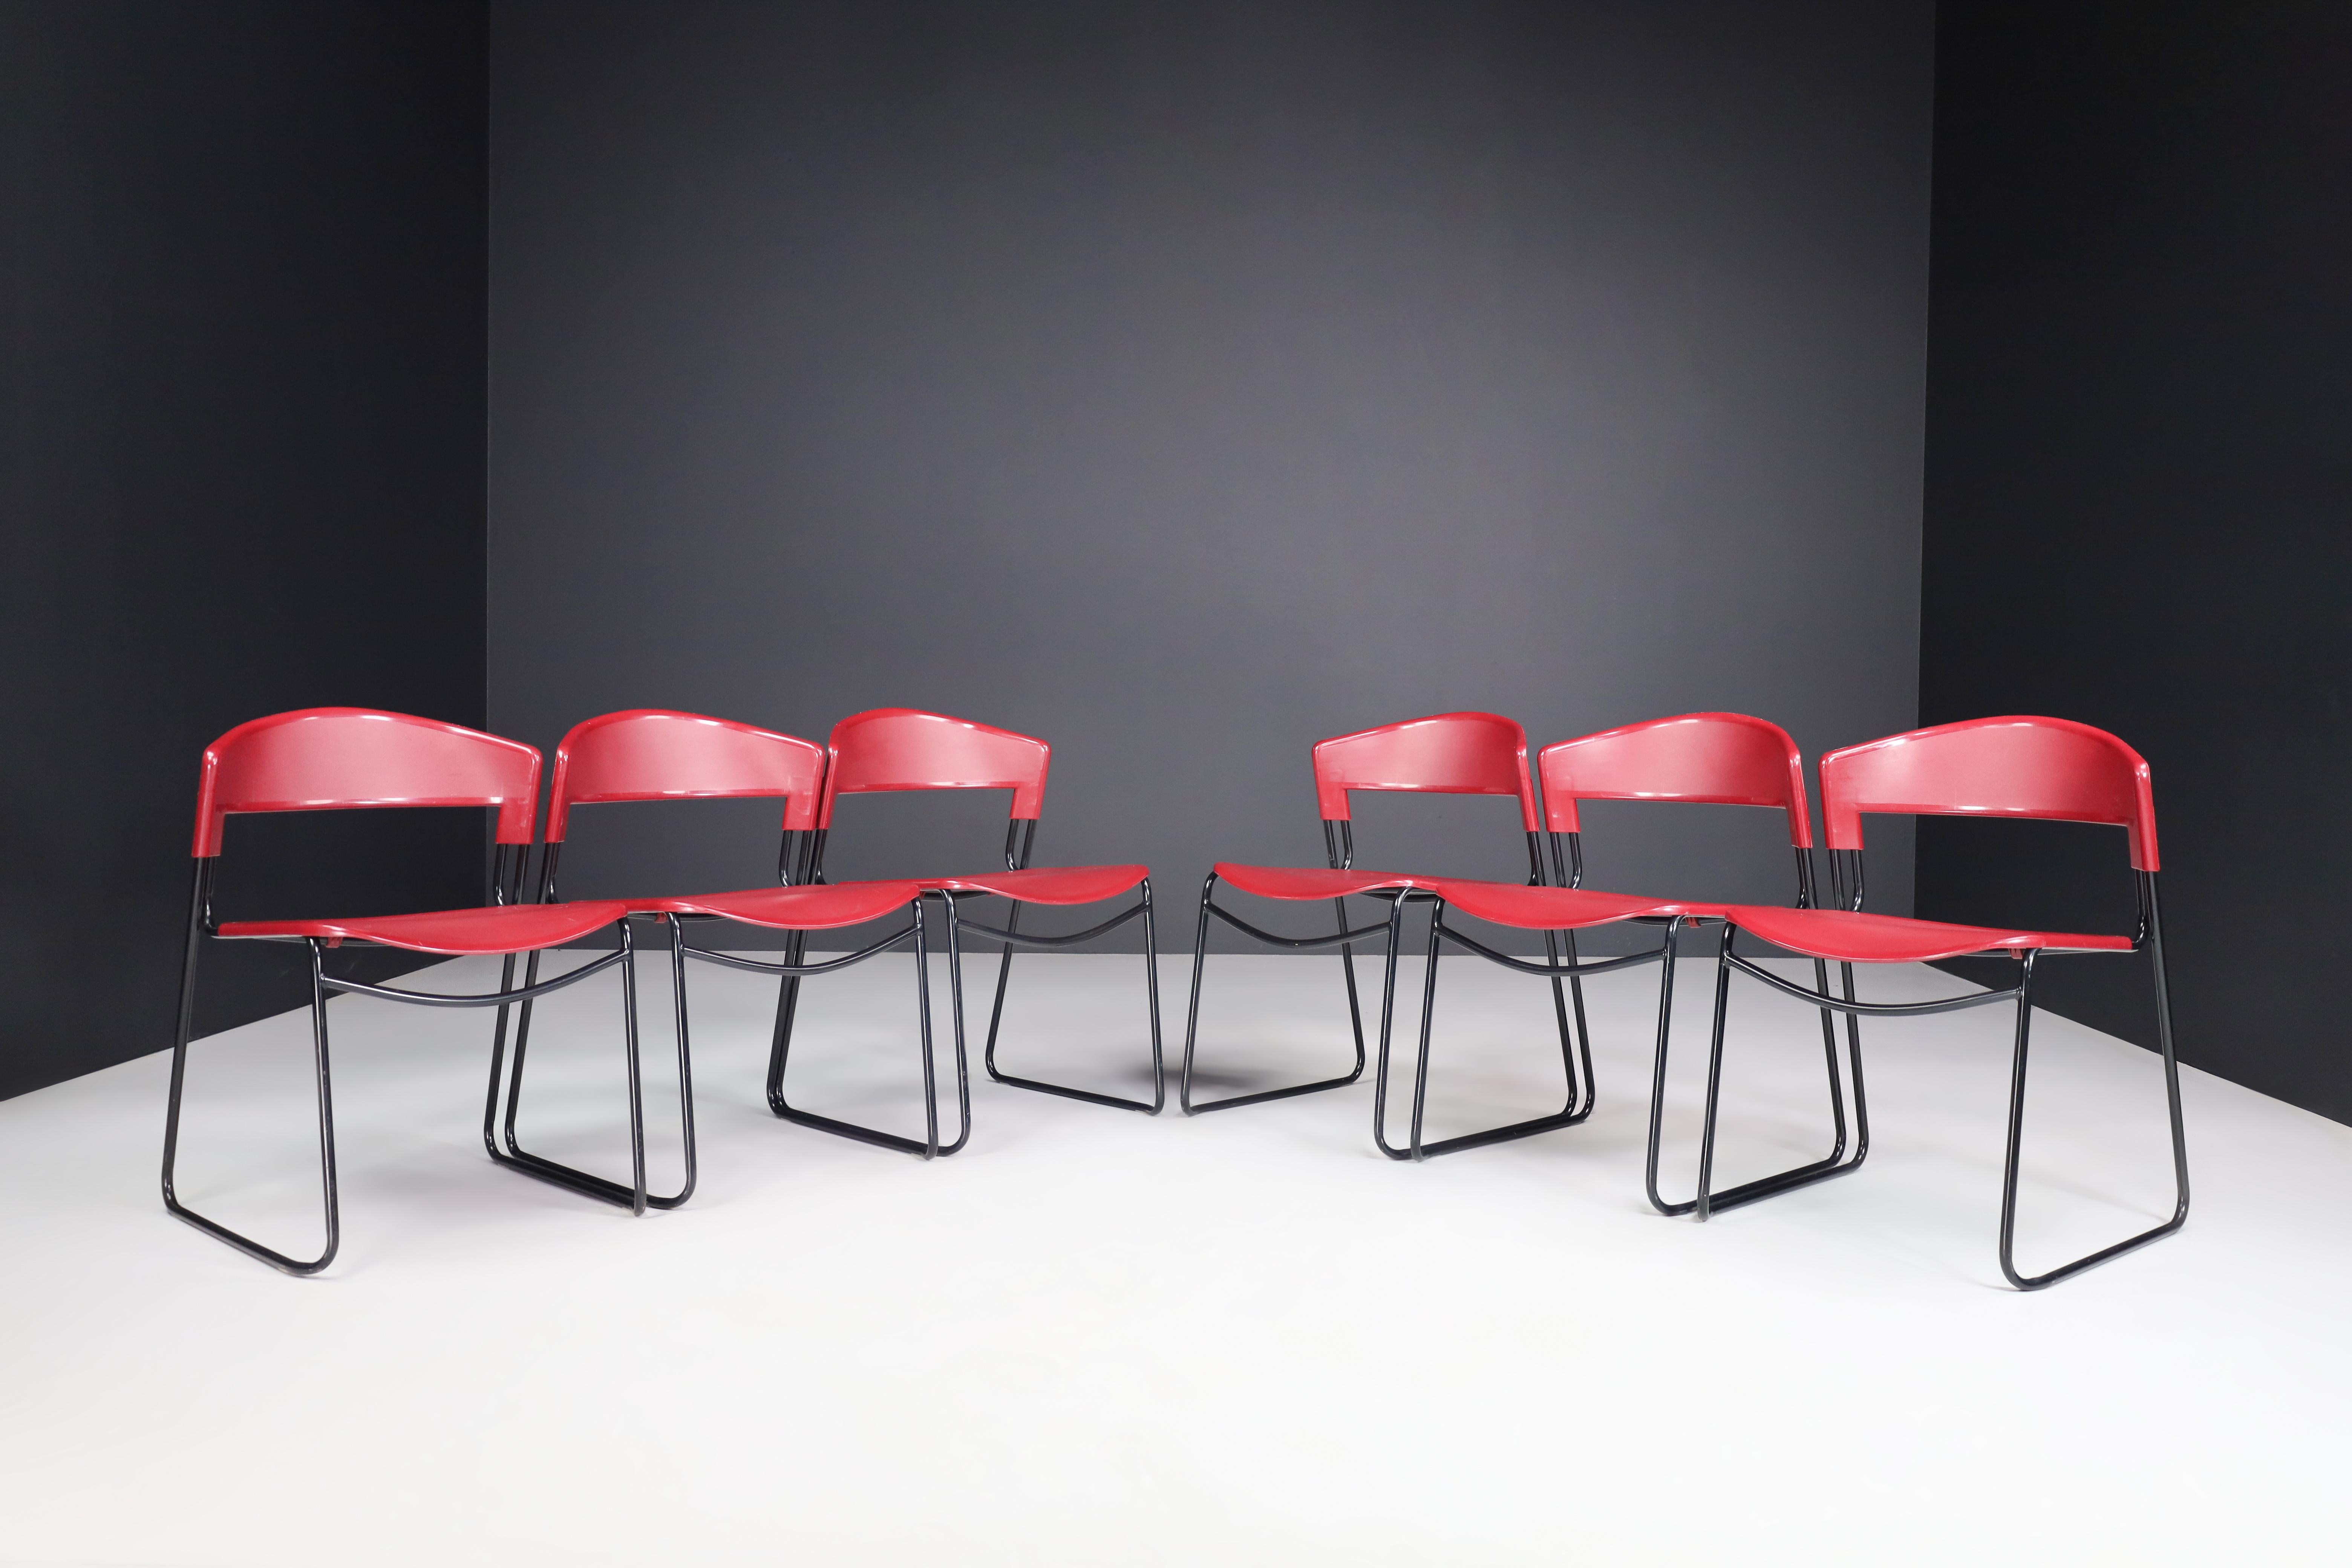 Satz von 6 stapelbaren Stühlen Paolo Favaretto & Airborne Assisa Italien 1980er

Schöne Designstühle mit schwarz beschichtetem Stahlrohrgestell und Sitz und Rückenlehne aus Polypropylen. Der Architekt und Designer Paolo Favaretto hat ihn